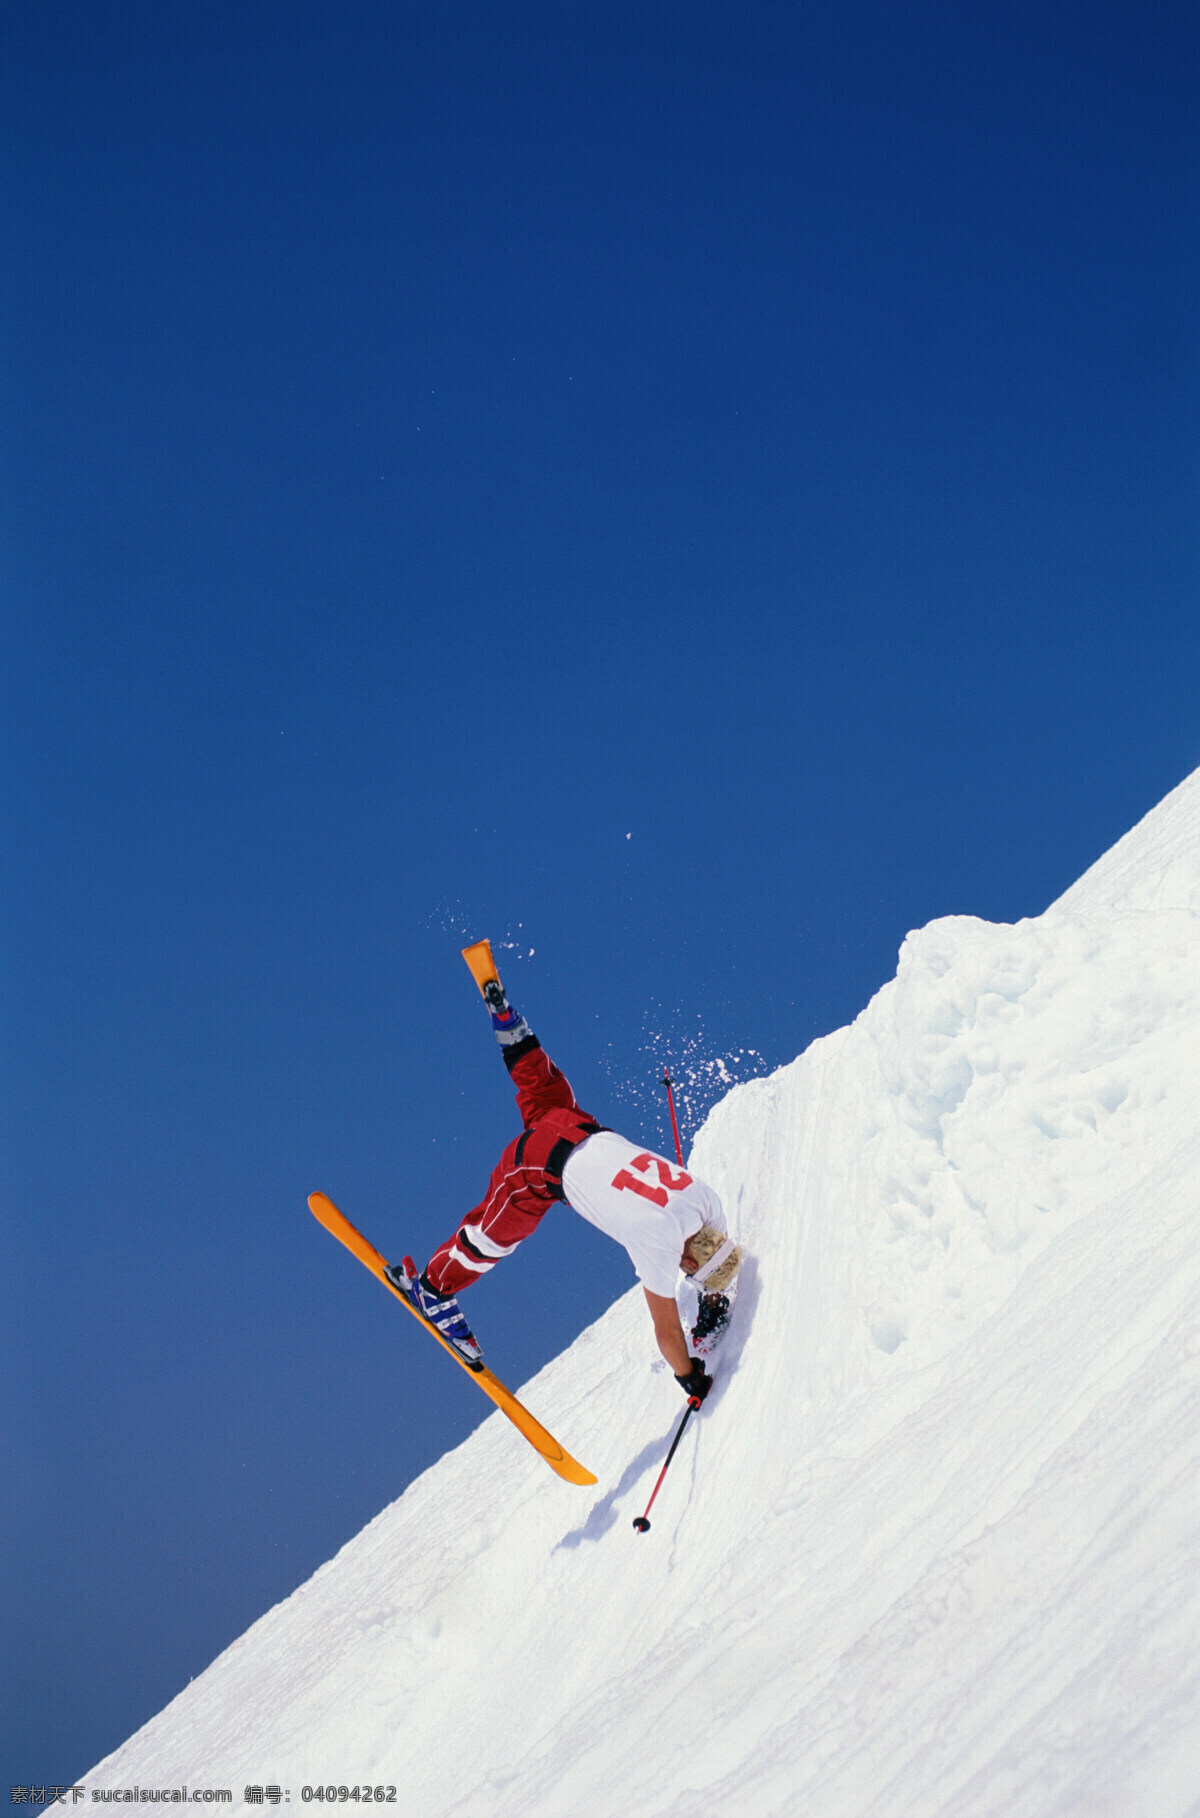 滑雪 摔跤 人 美丽 自然 雪地 冬季 运动 人物 飞越 飞起 跳跃 腾空 倒立 雪花 极限运动 滑雪图片 生活百科